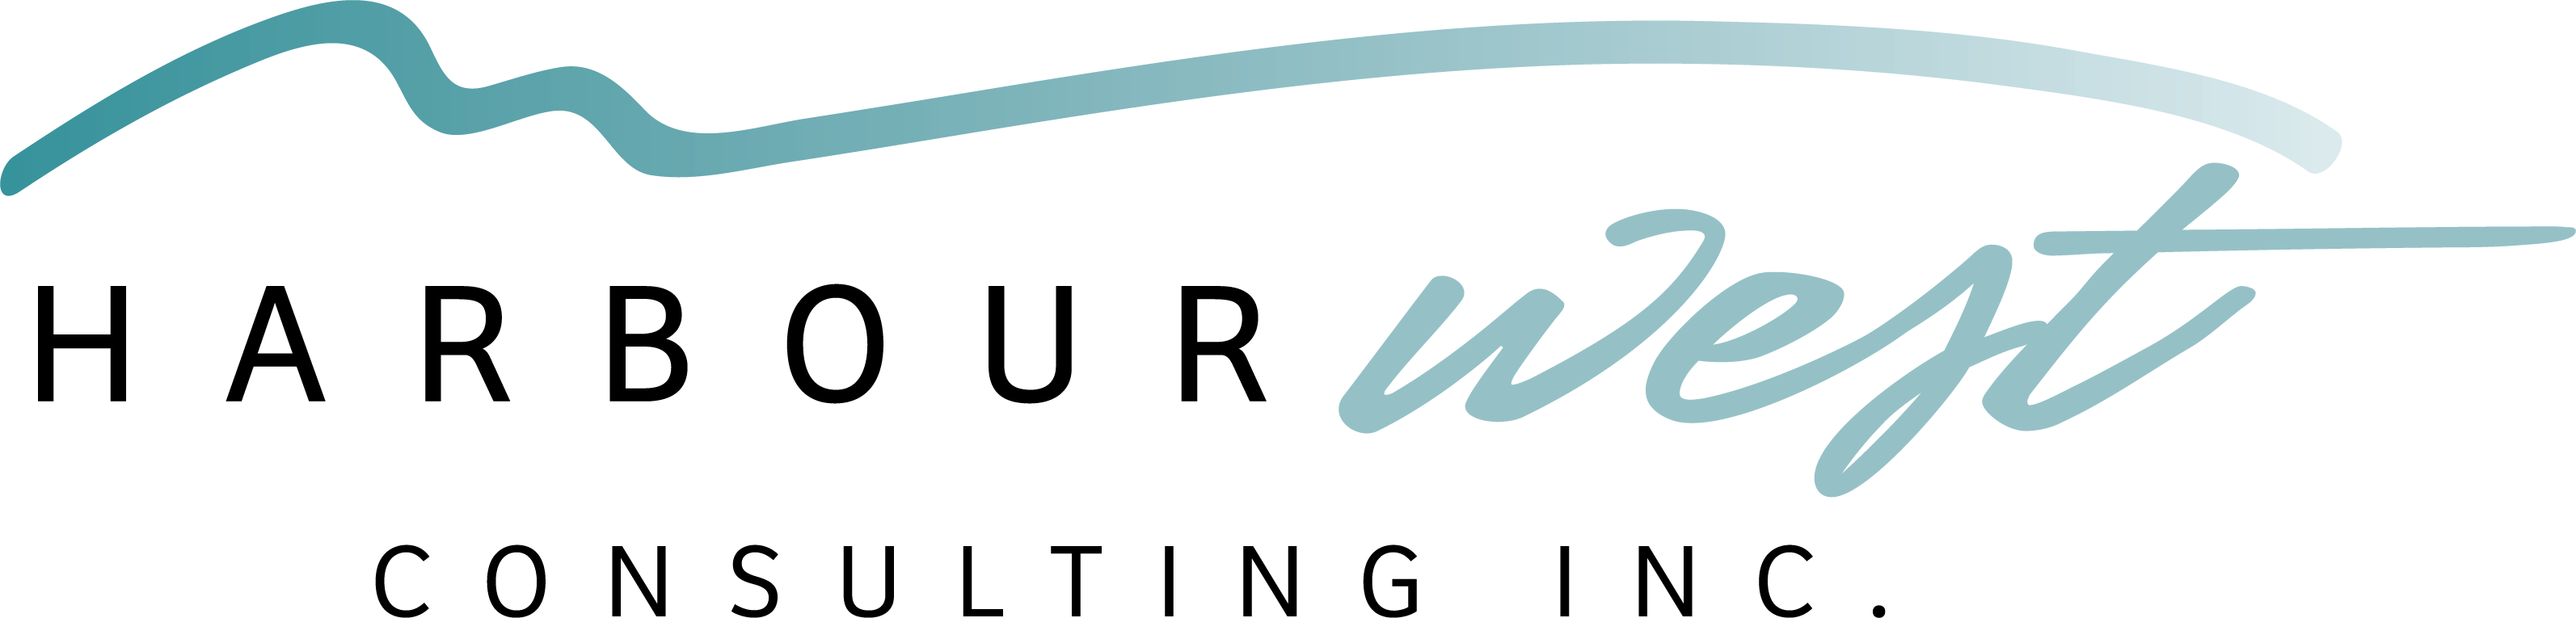 HarbourWest-Logo